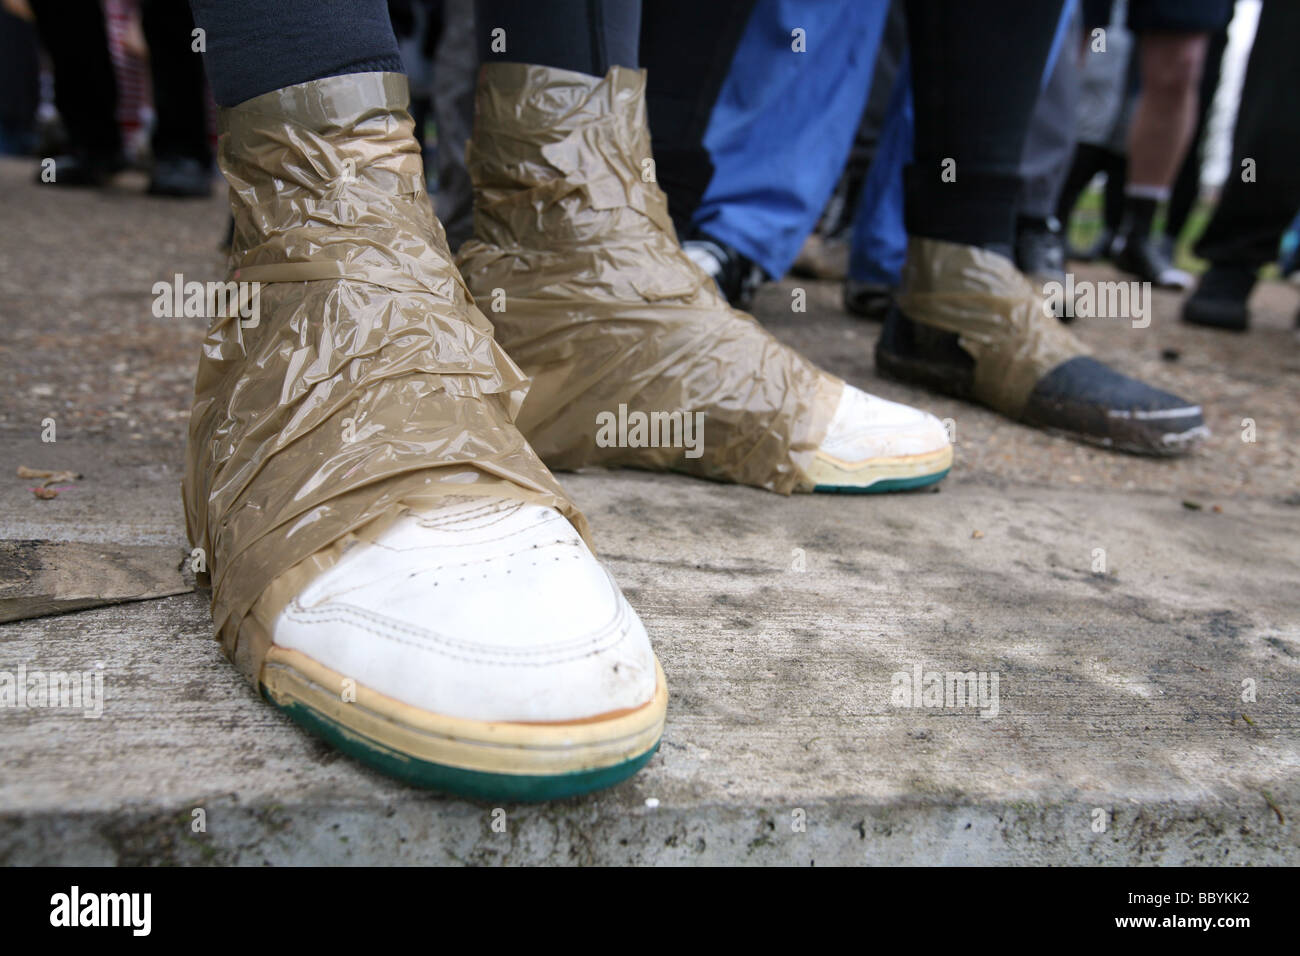 Teilnehmer-Schuhe mit Klebeband an ihren Knöcheln vor Beginn des Rennens  Mad Maldon Schlamm im Fluss Blackwater bei Maldon Essex statt  Stockfotografie - Alamy